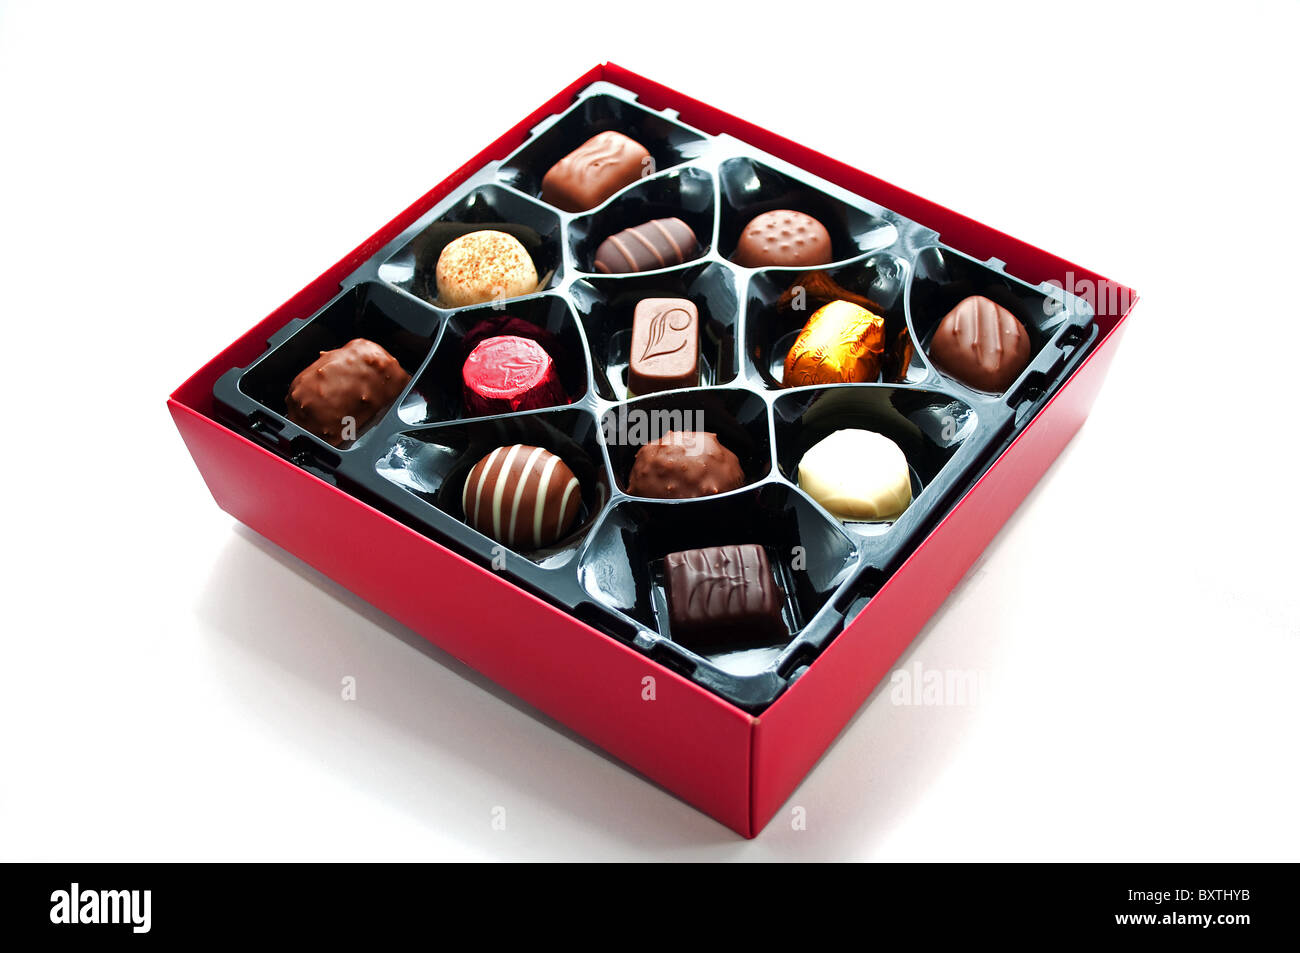 Une boîte de chocolats Thorntons sur fond blanc Banque D'Images